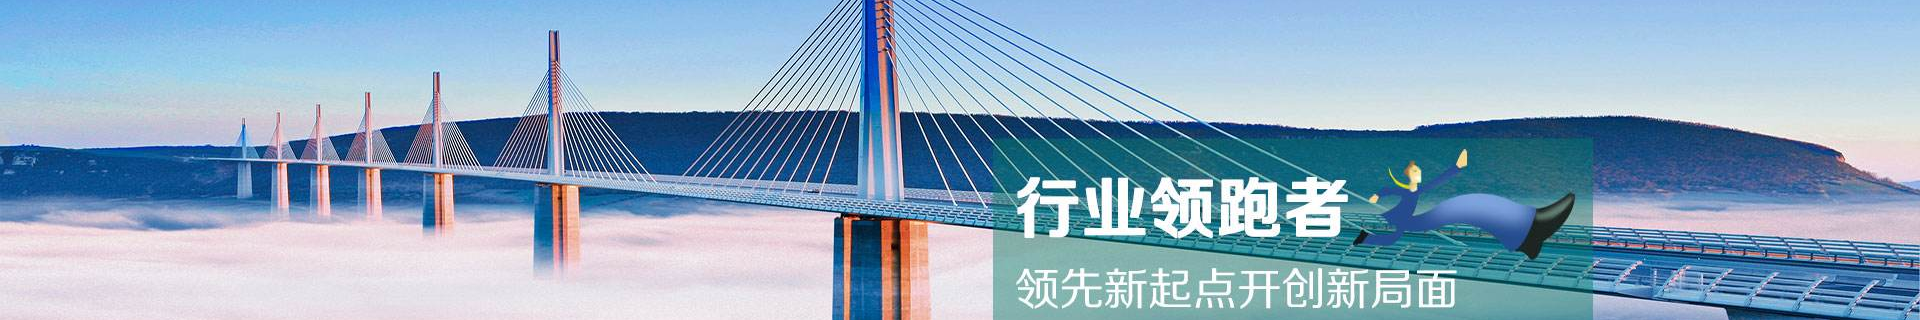 天新生物——天游ty8官方网站_化妆品行业_ty8线路检测登录注册